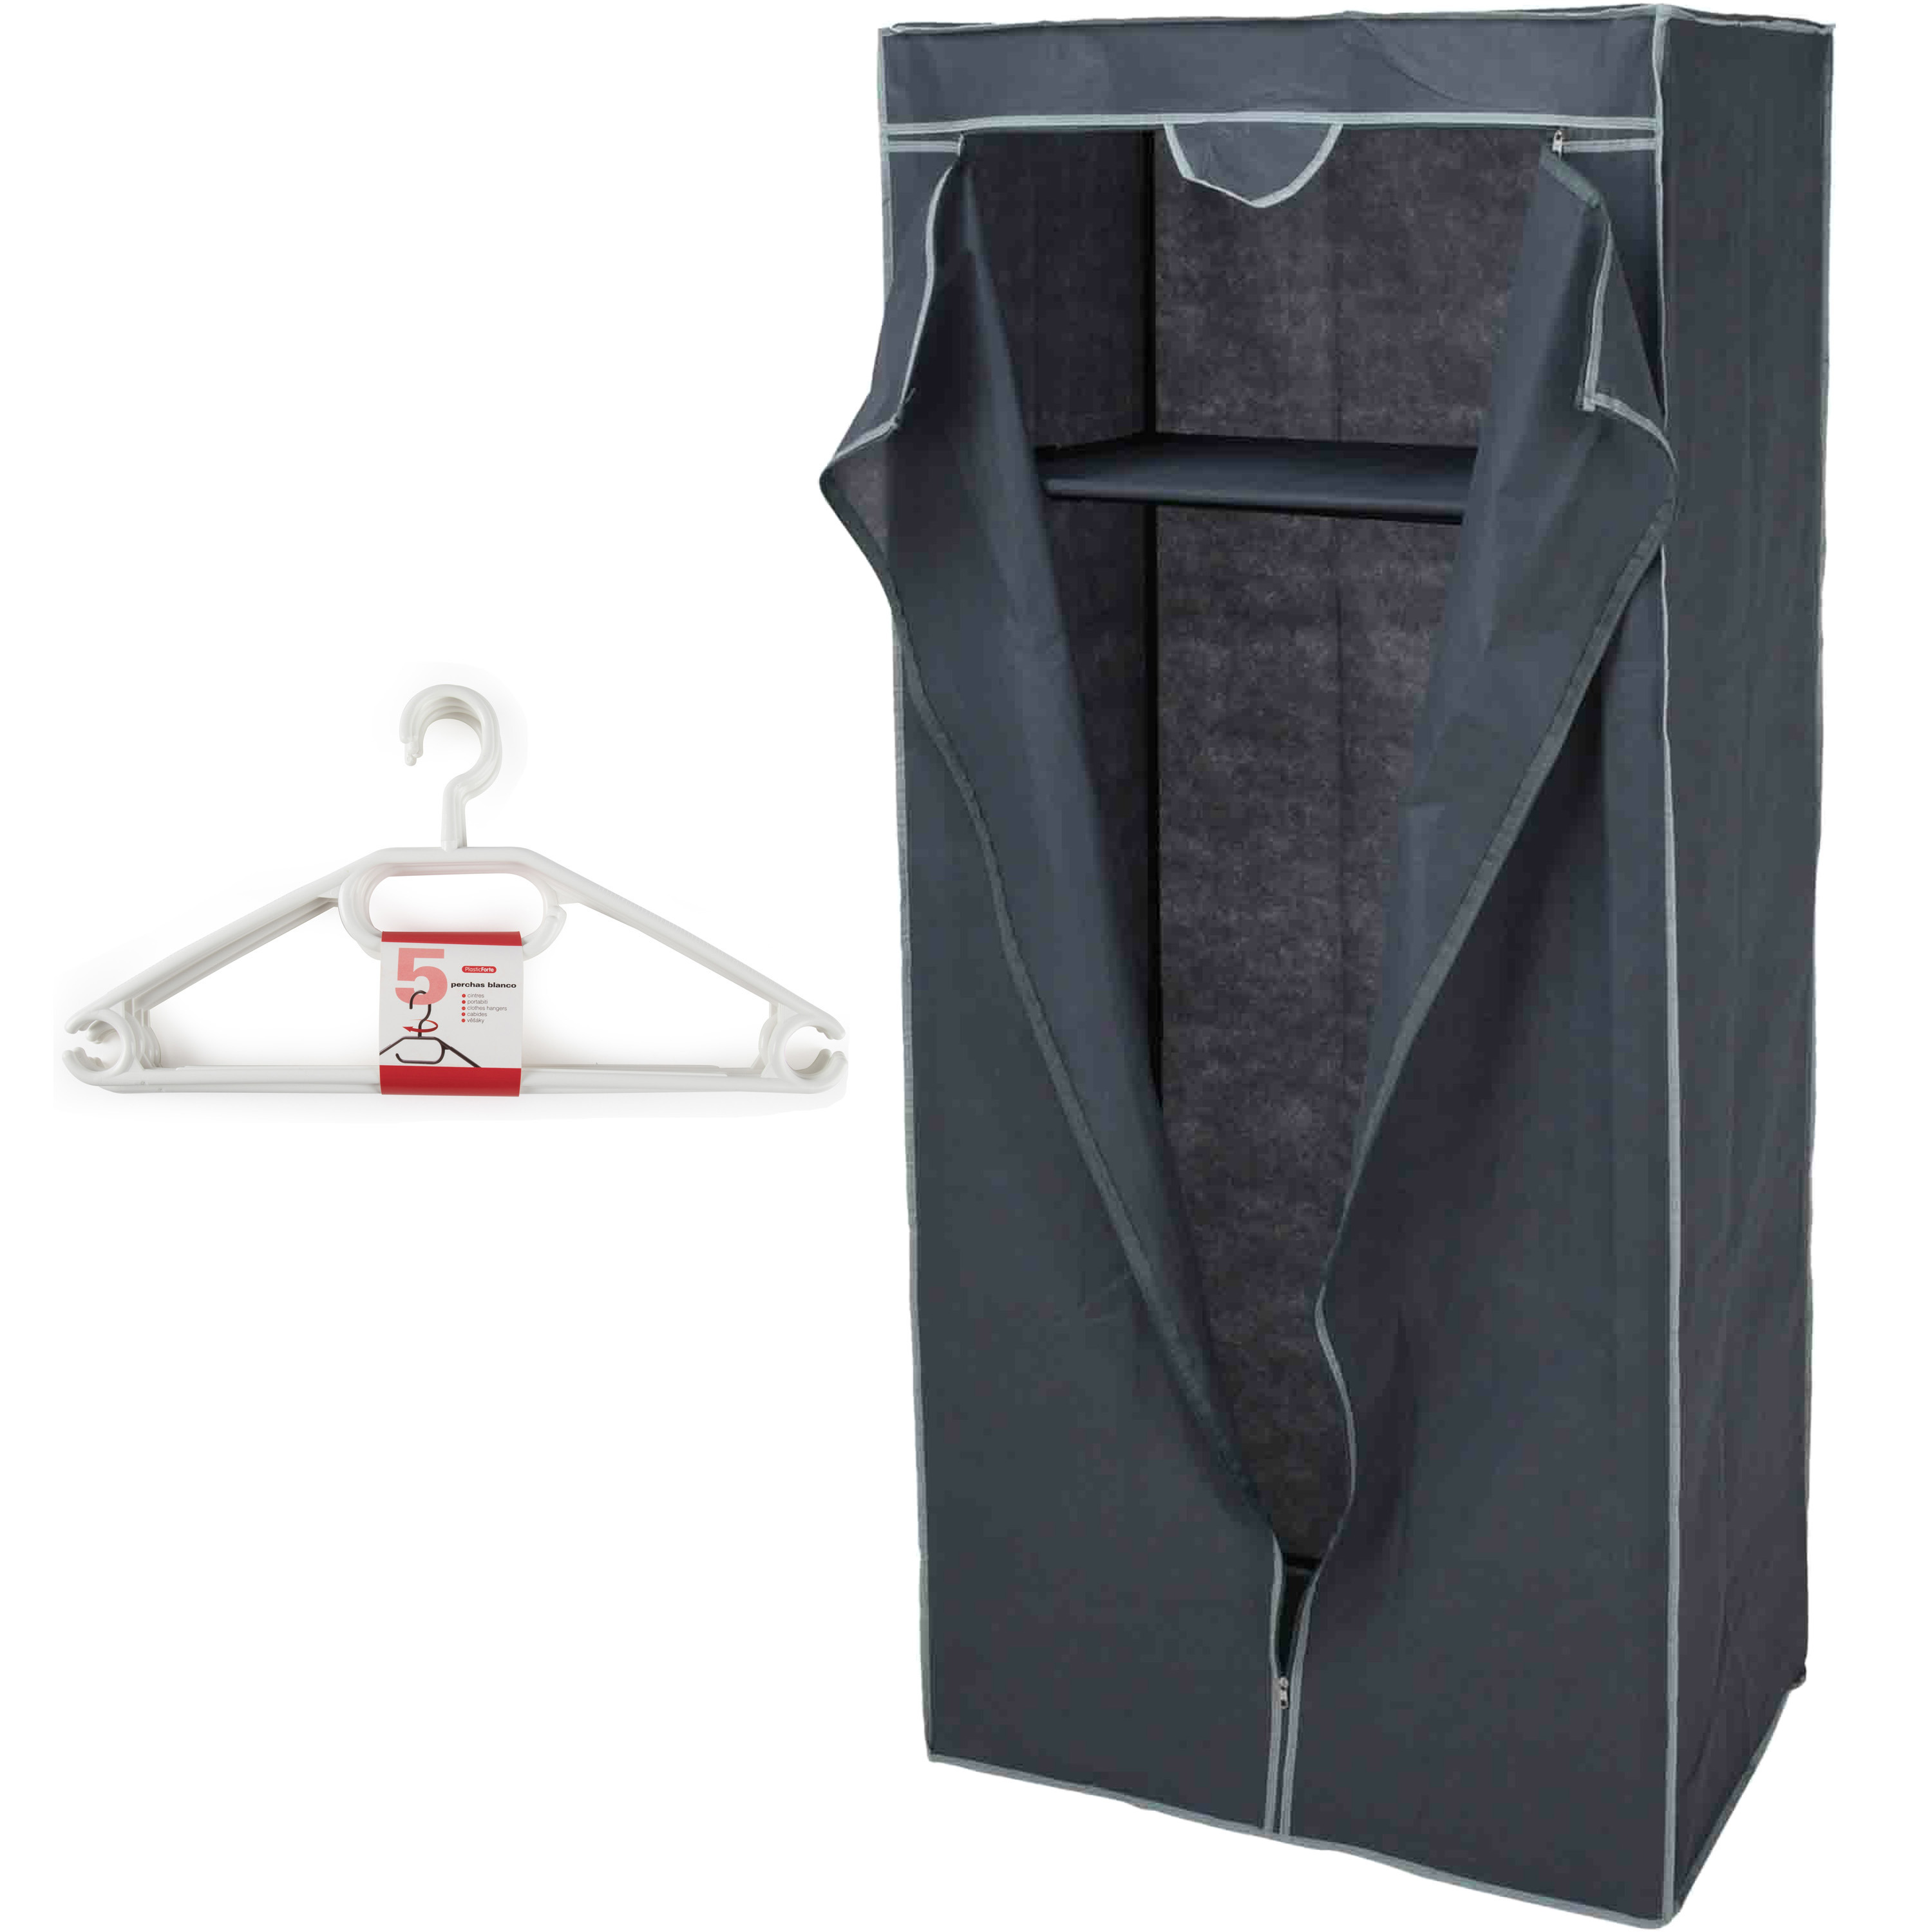 Mobiele opvouwbare kledingkast grijs 75 x 160 cm met 10x kledinghangers wit -